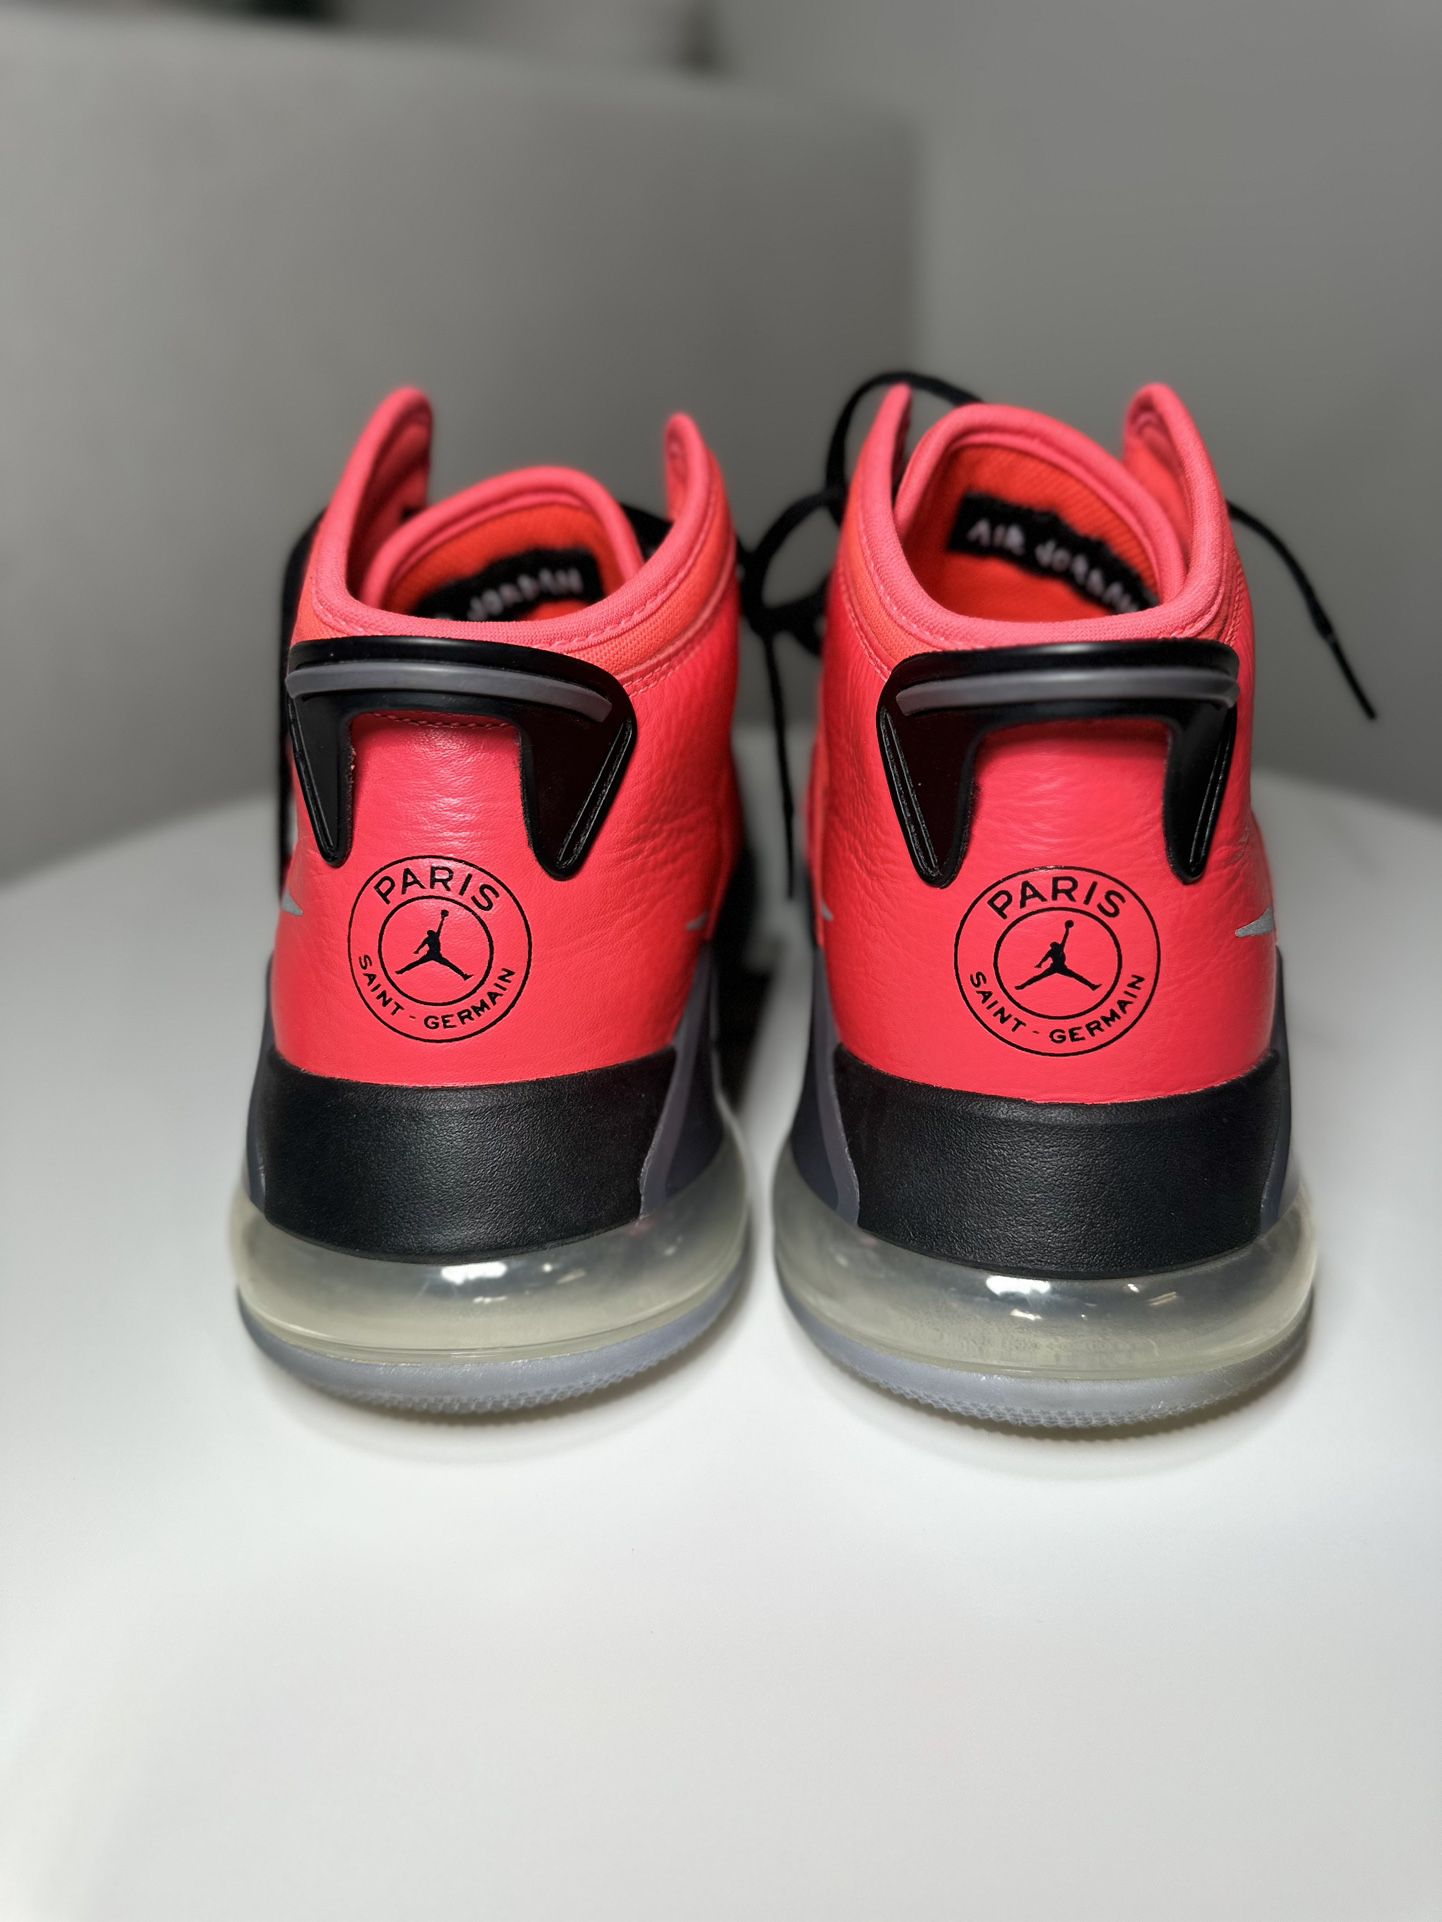 Nike Jordan Mars 270’s In PSG Paris Saint-Germain colorway in size 13